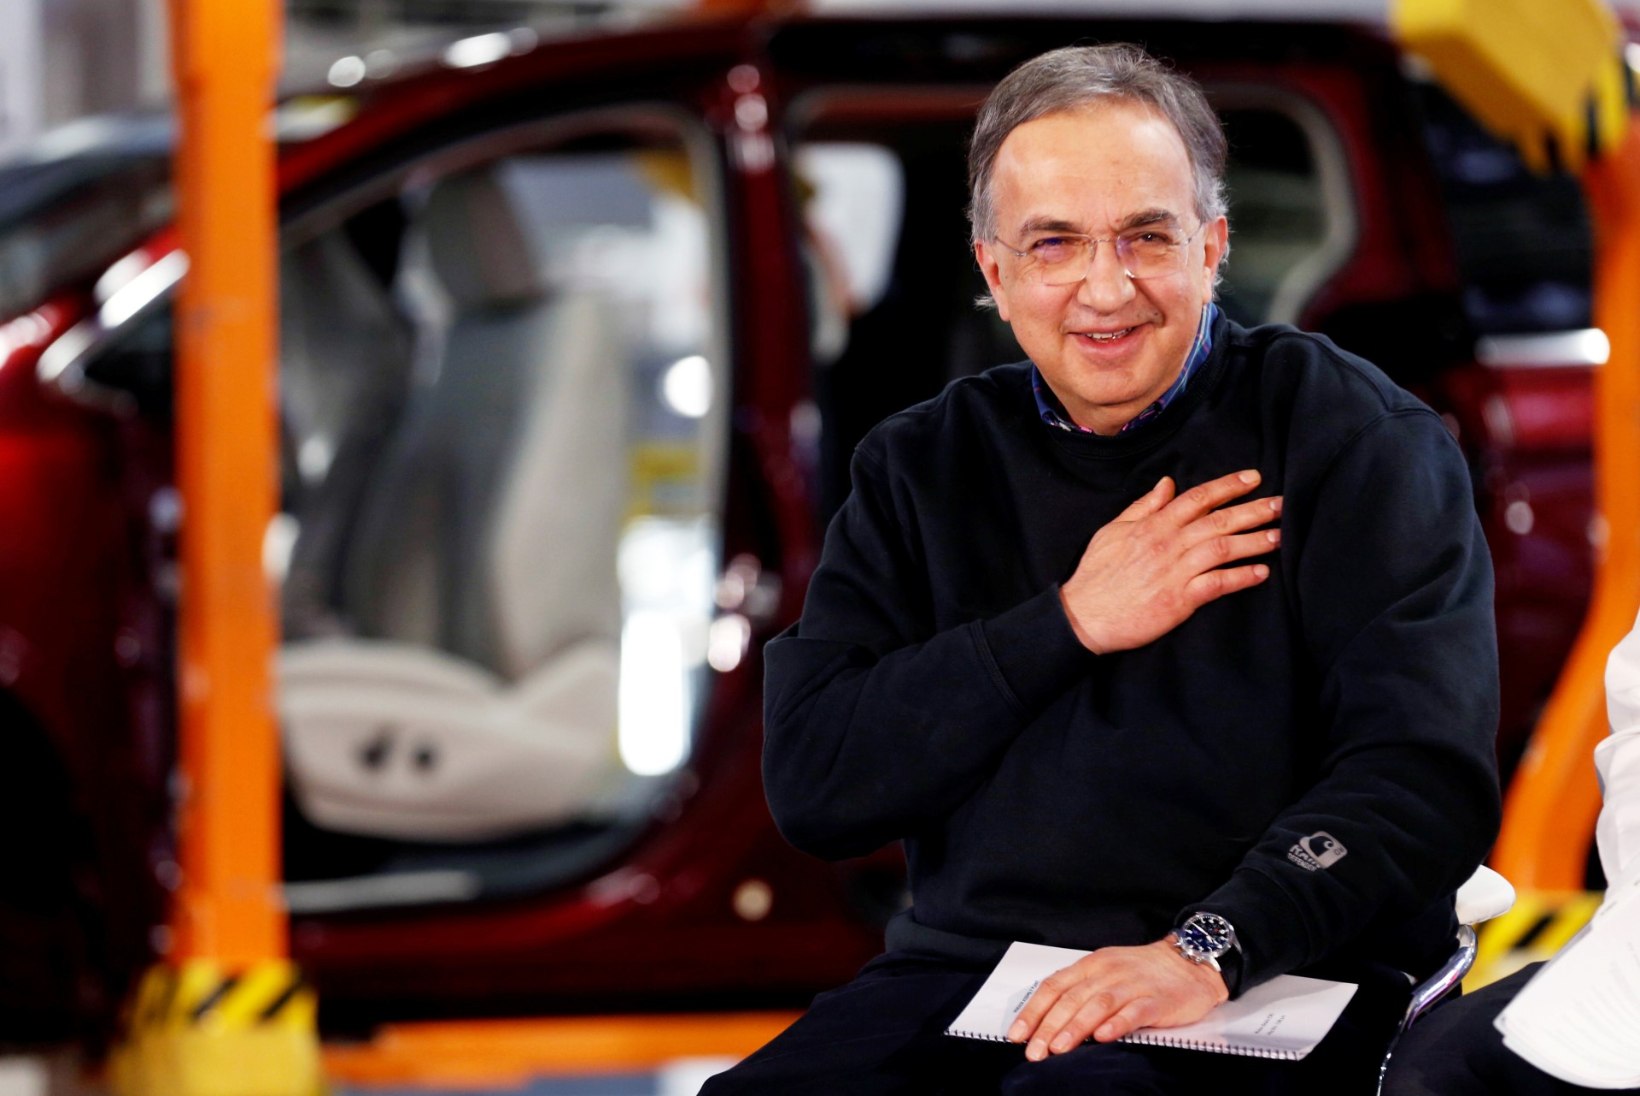 Suri mõned päevad tagasi Fiati Chrysleri tegevjuhi kohalt lahkunud Sergio Marchionne